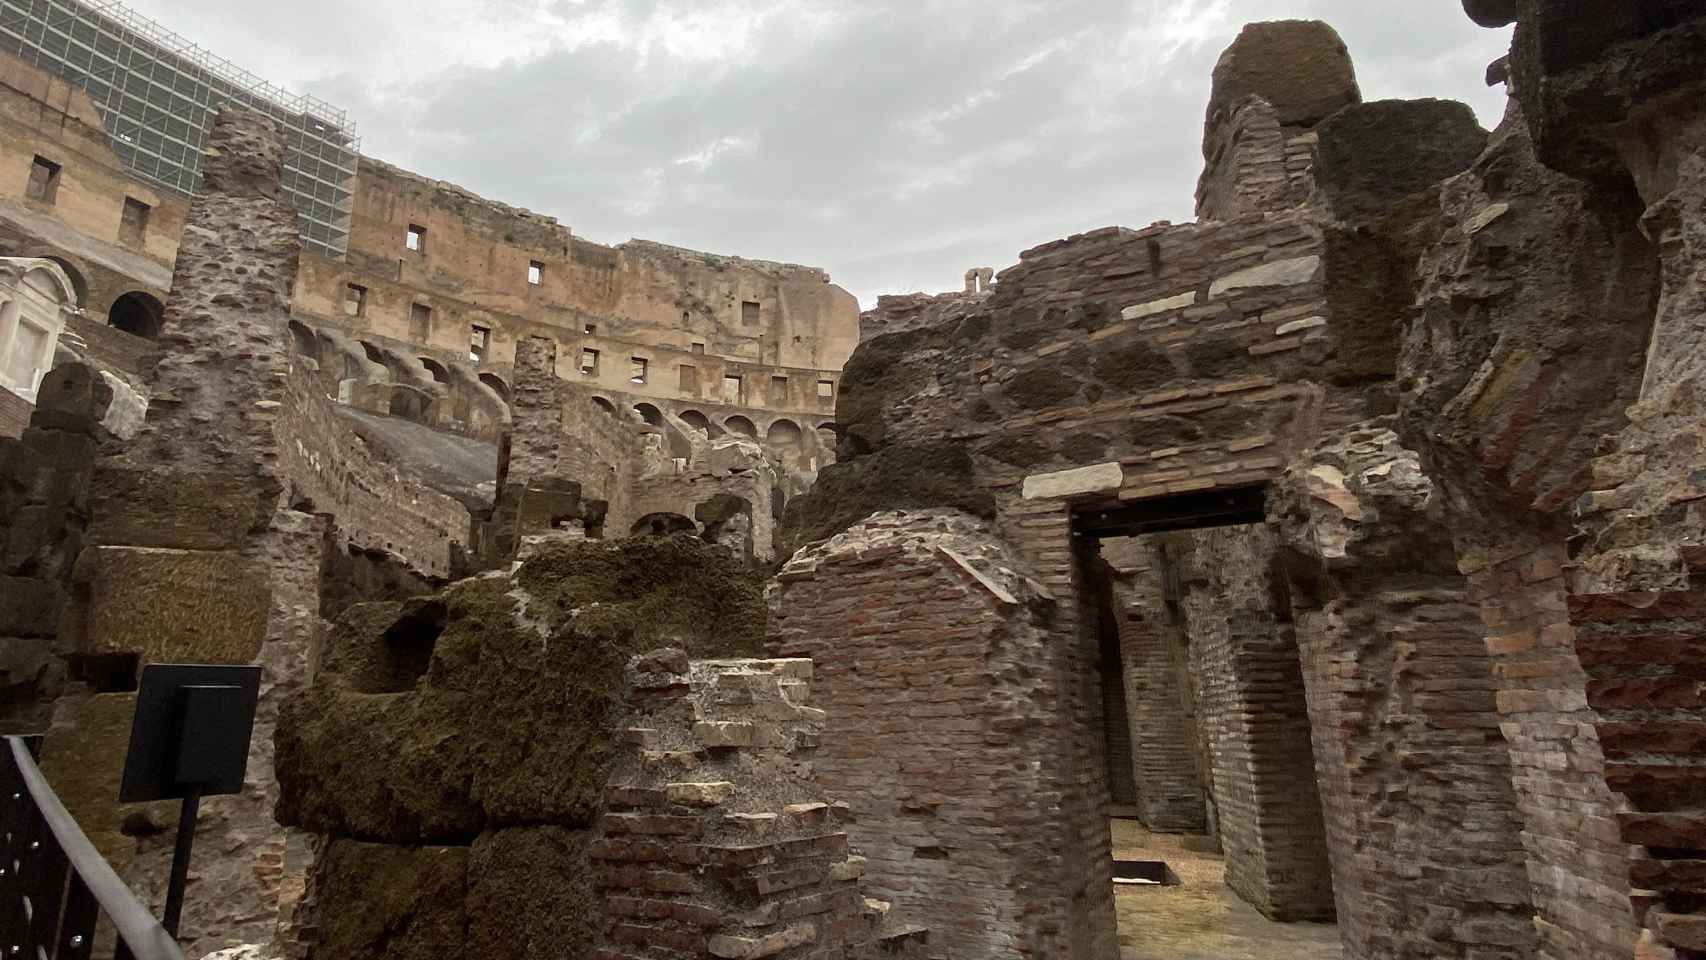 Vista de las galerías subterráneas del Coliseo.